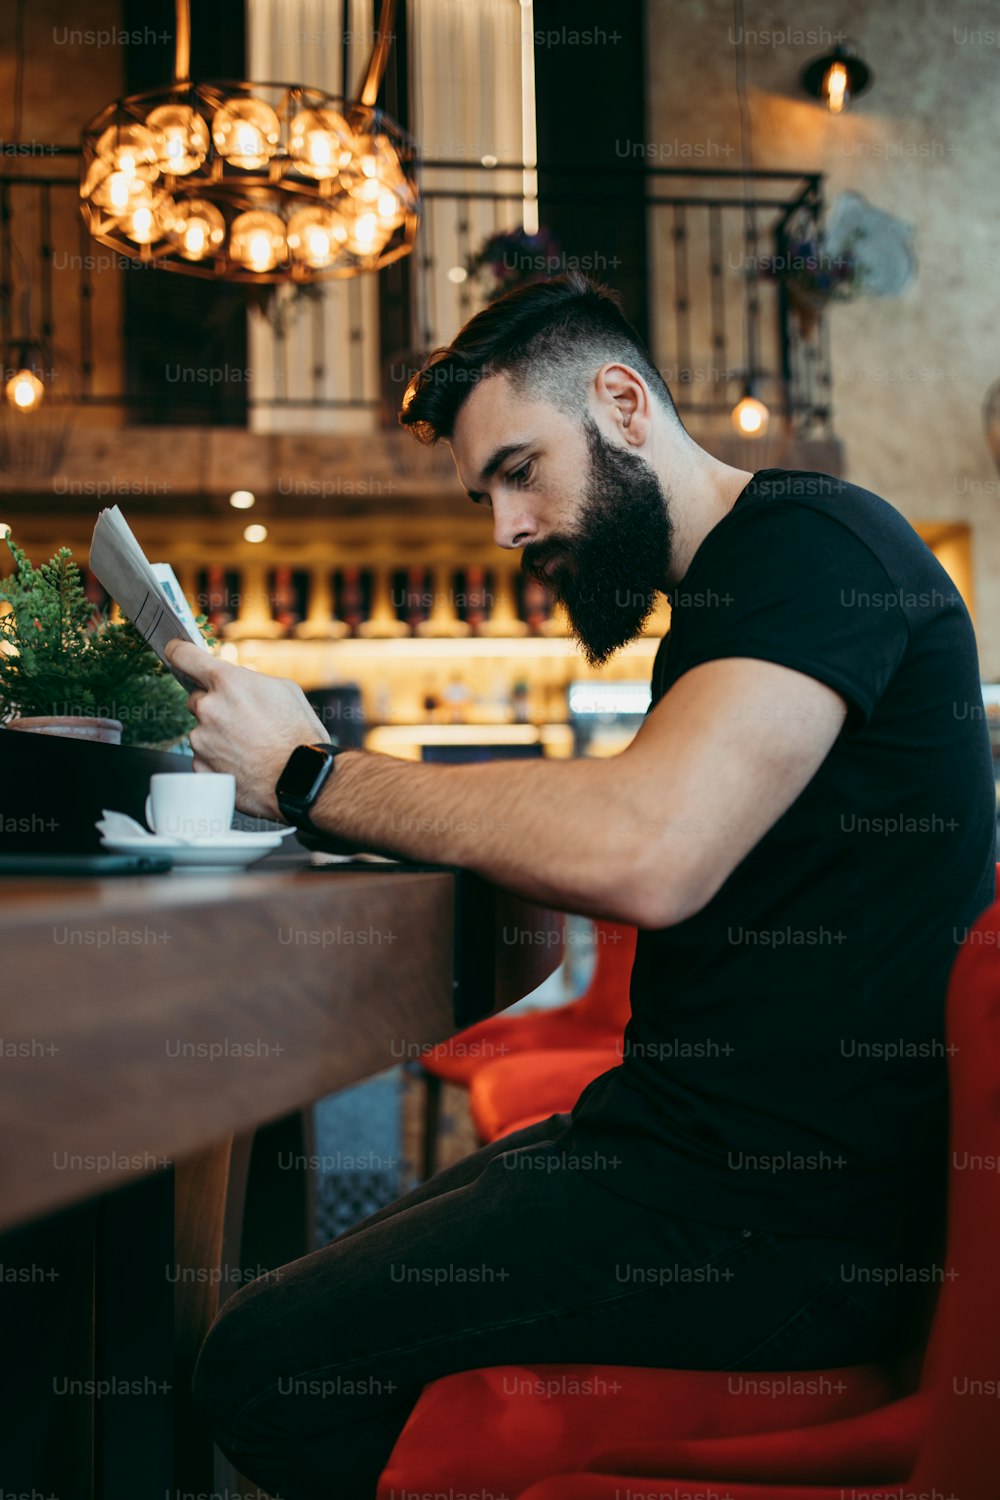 Hombre hipster adulto joven con una barba larga sentado en un café bar moderno, leyendo periódicos y reaccionando emocionalmente.